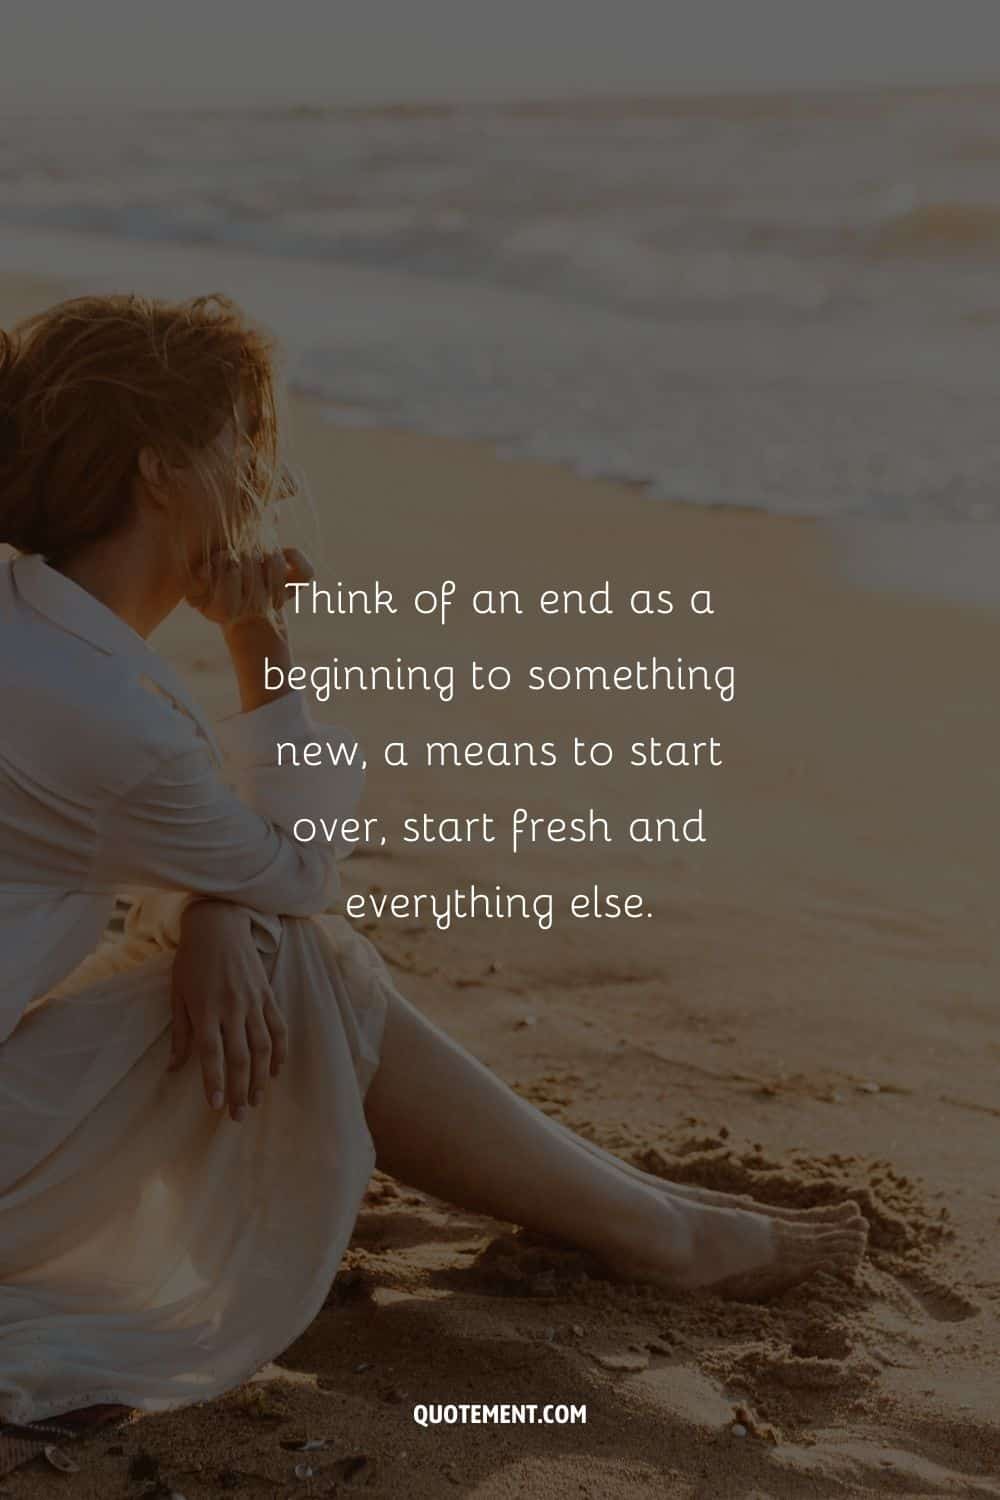 "Piensa en un final como el comienzo de algo nuevo, un medio para volver a empezar, empezar de cero y todo lo demás". - Desconocido